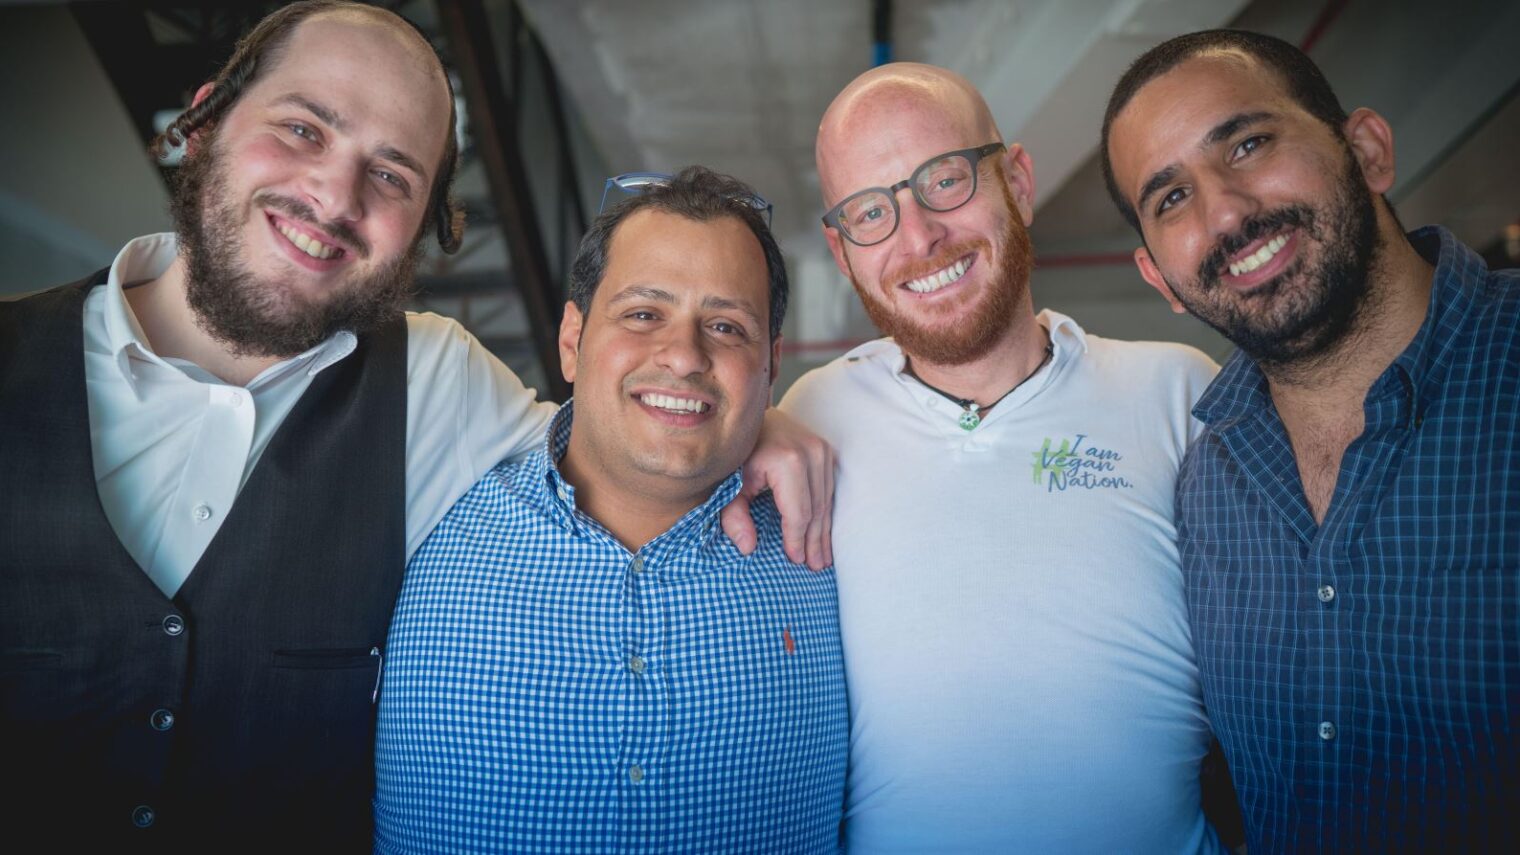 VeganNation founders, from left, Shneor Shapira, Yossi Raybi, Isaac Thomas and Nati Giat. Photo: courtesy